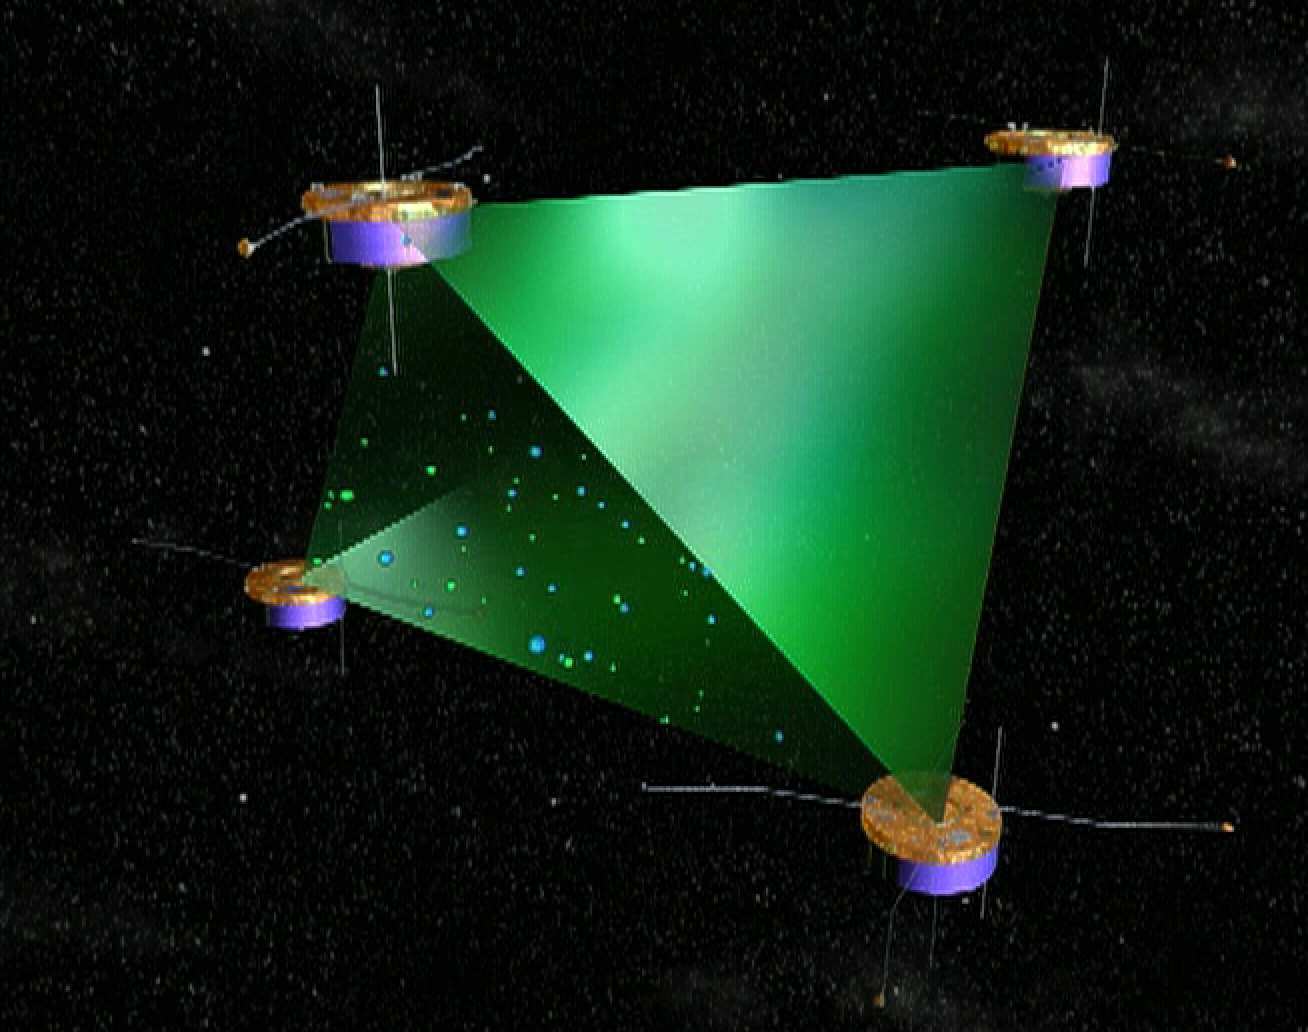 Cluster tetrahedron. Image credit: ESA.